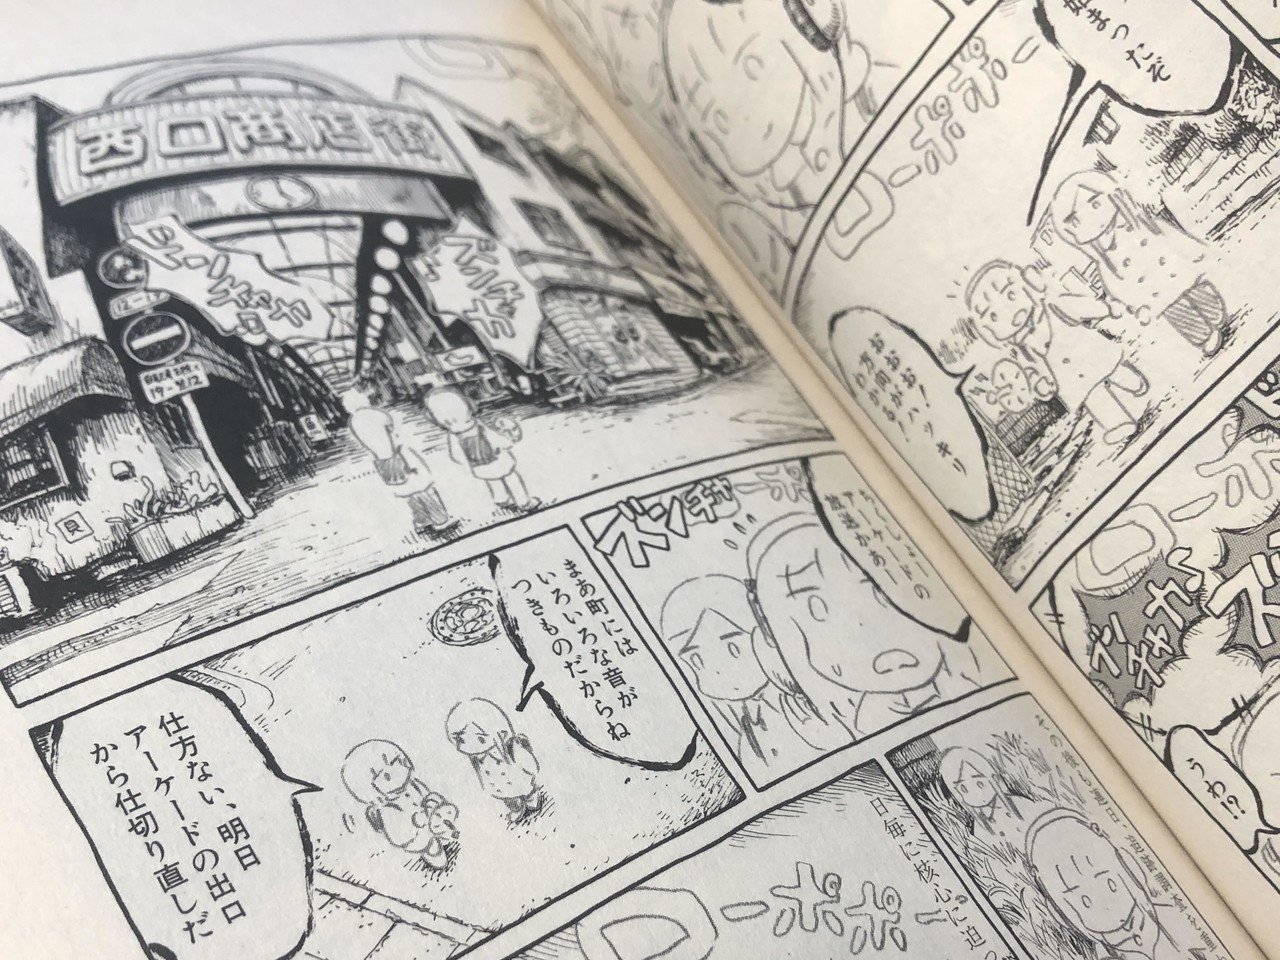 奇想の漫画家panpanyaの魅力とおすすめ21話 全作解説 長谷川 翔一 編集とマーケティング Note